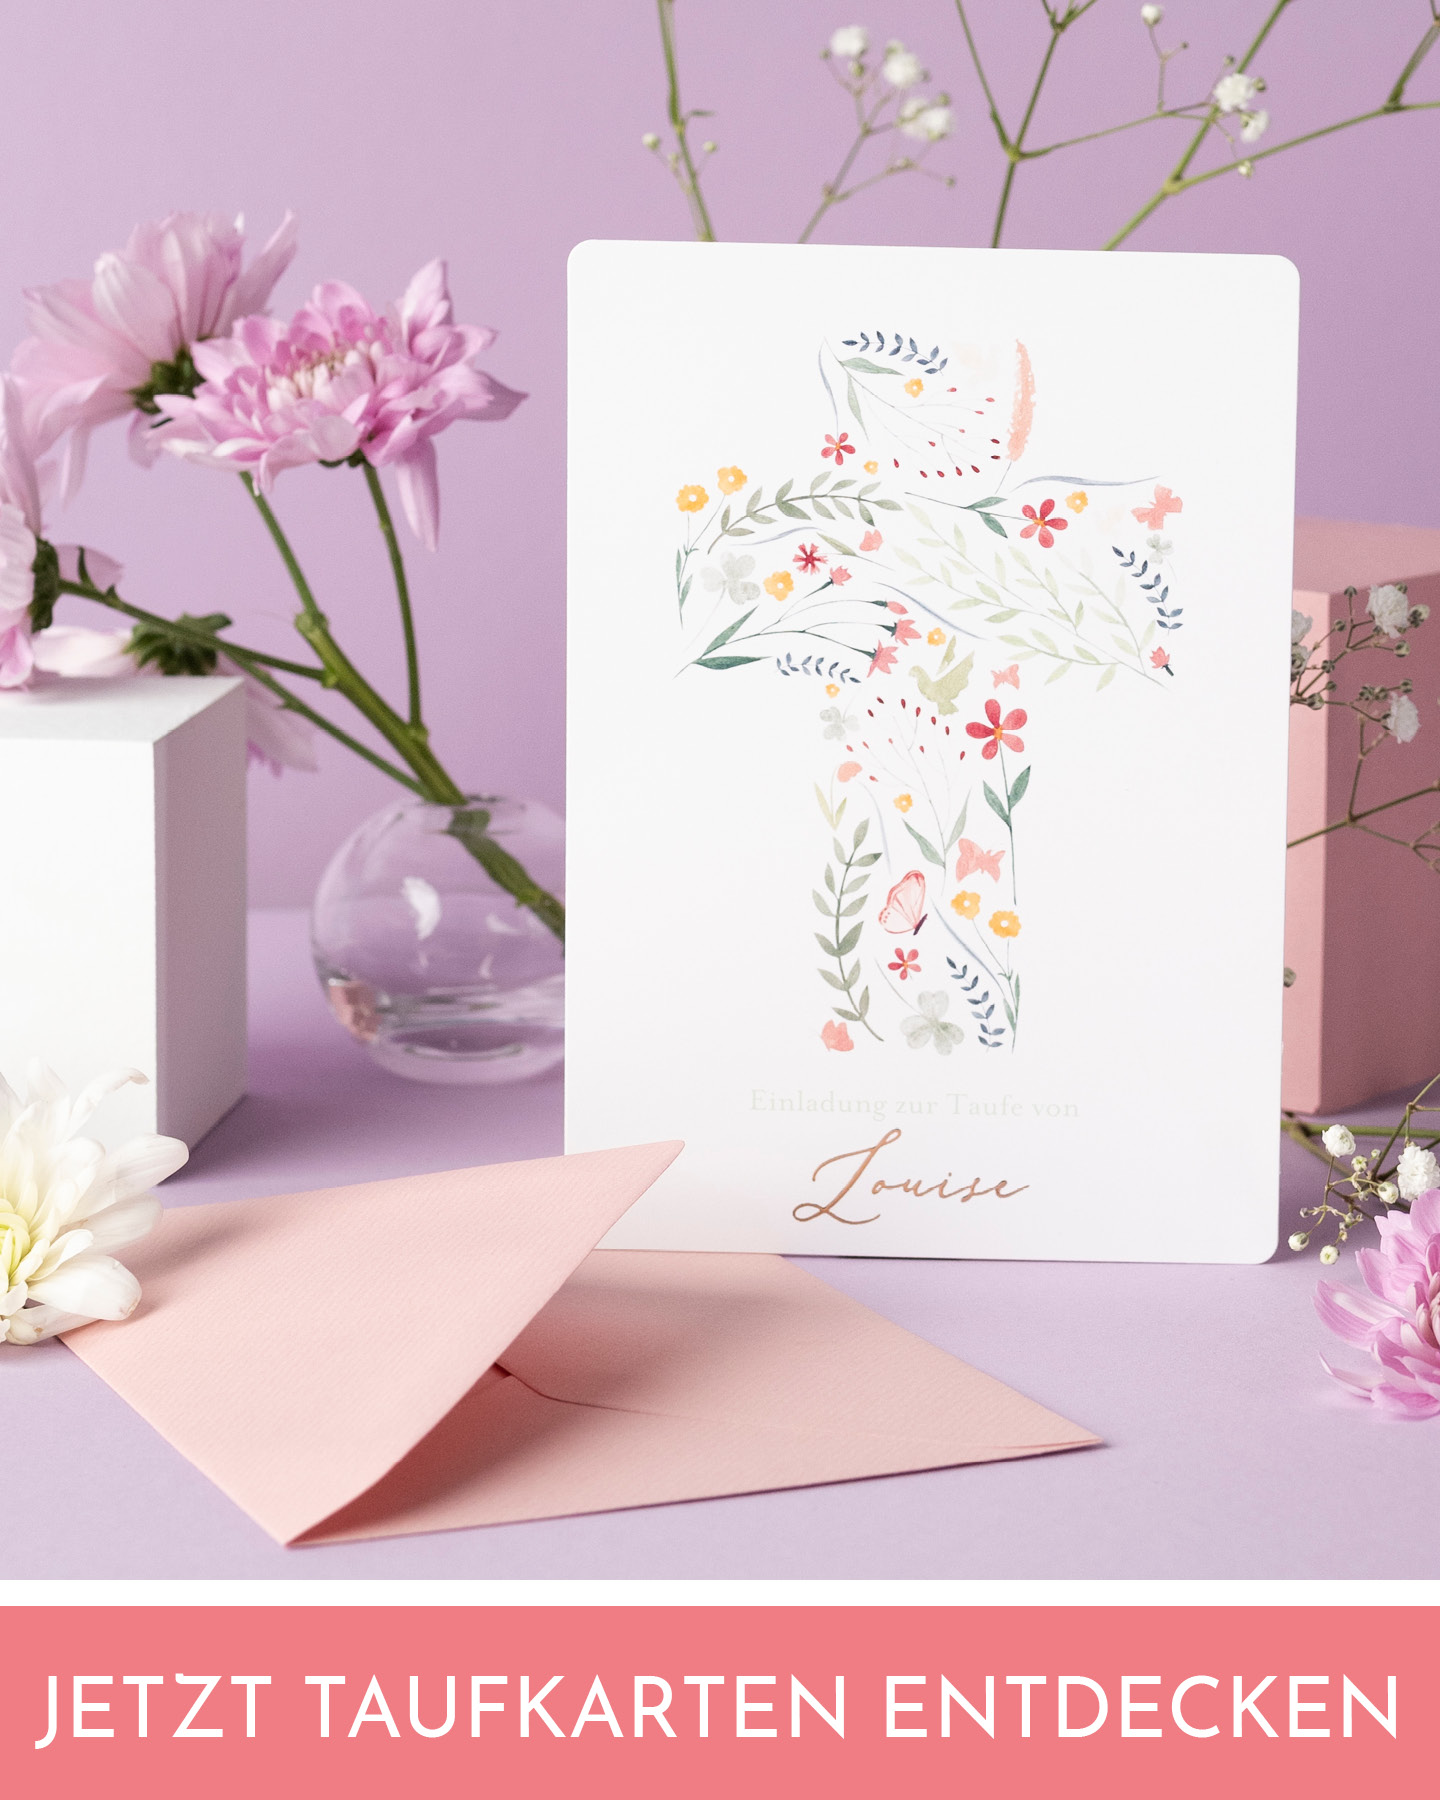 Einladungskarte zur Frühlingstaufe mit sKreuz aus kleinen Blüten